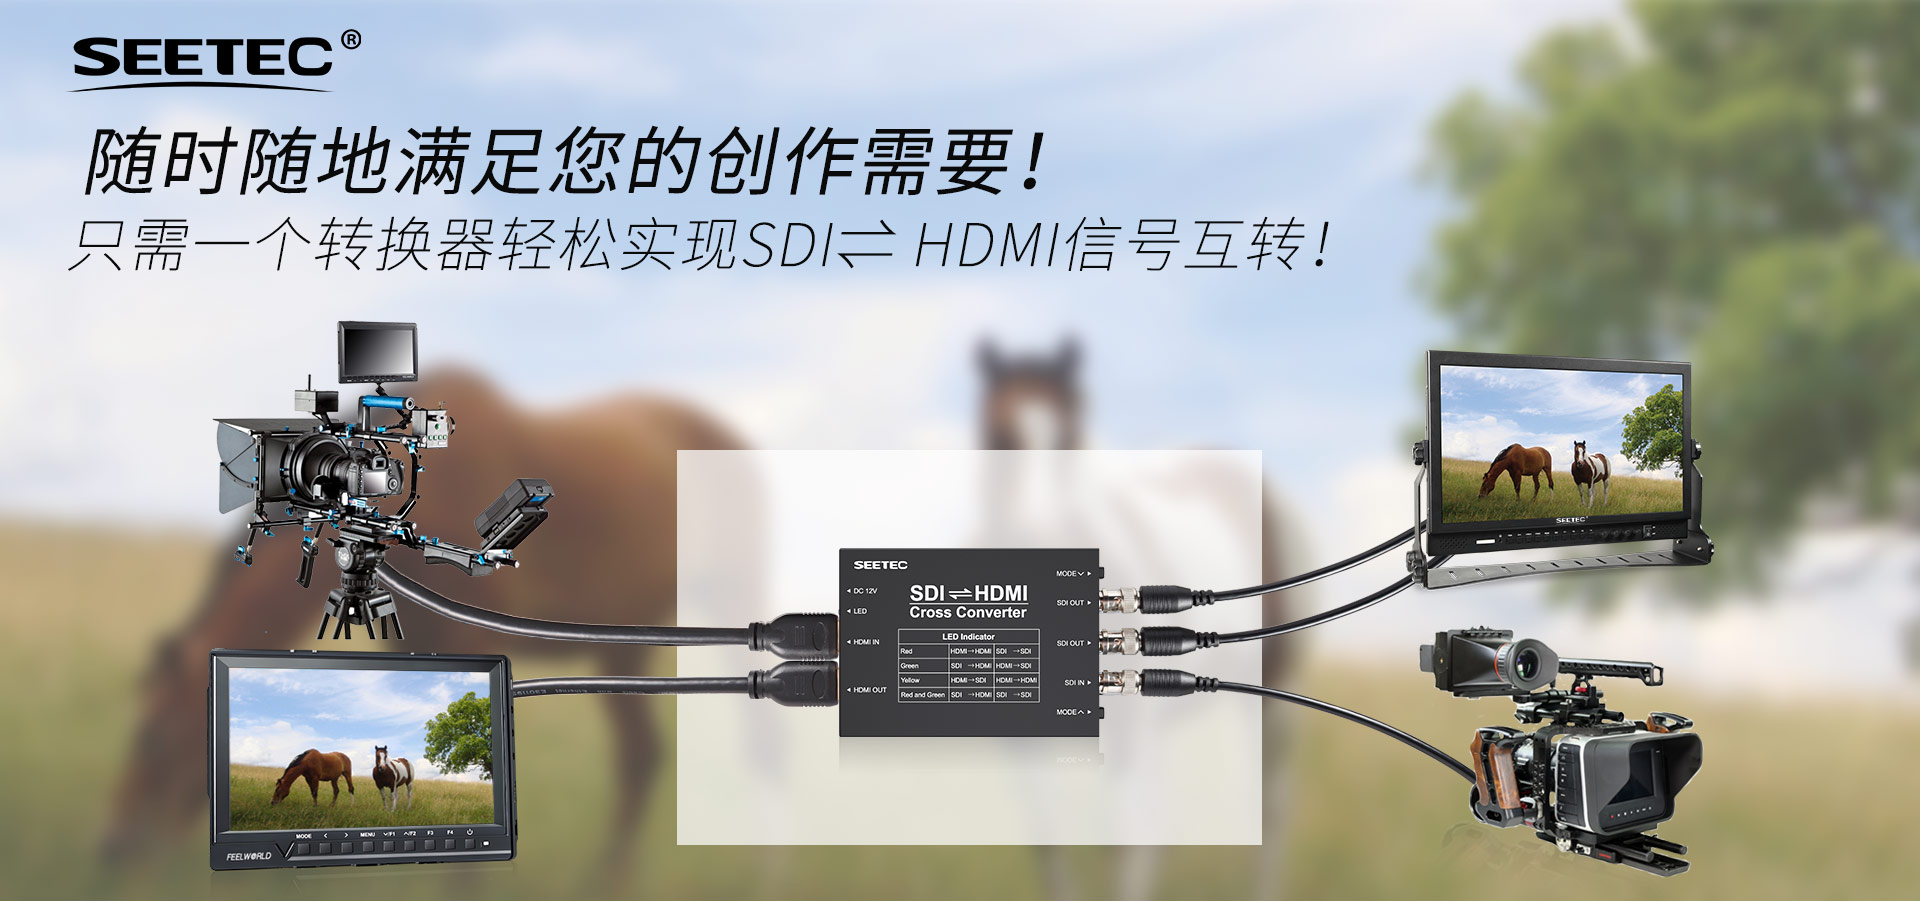 SDI HDMI高清信号互转